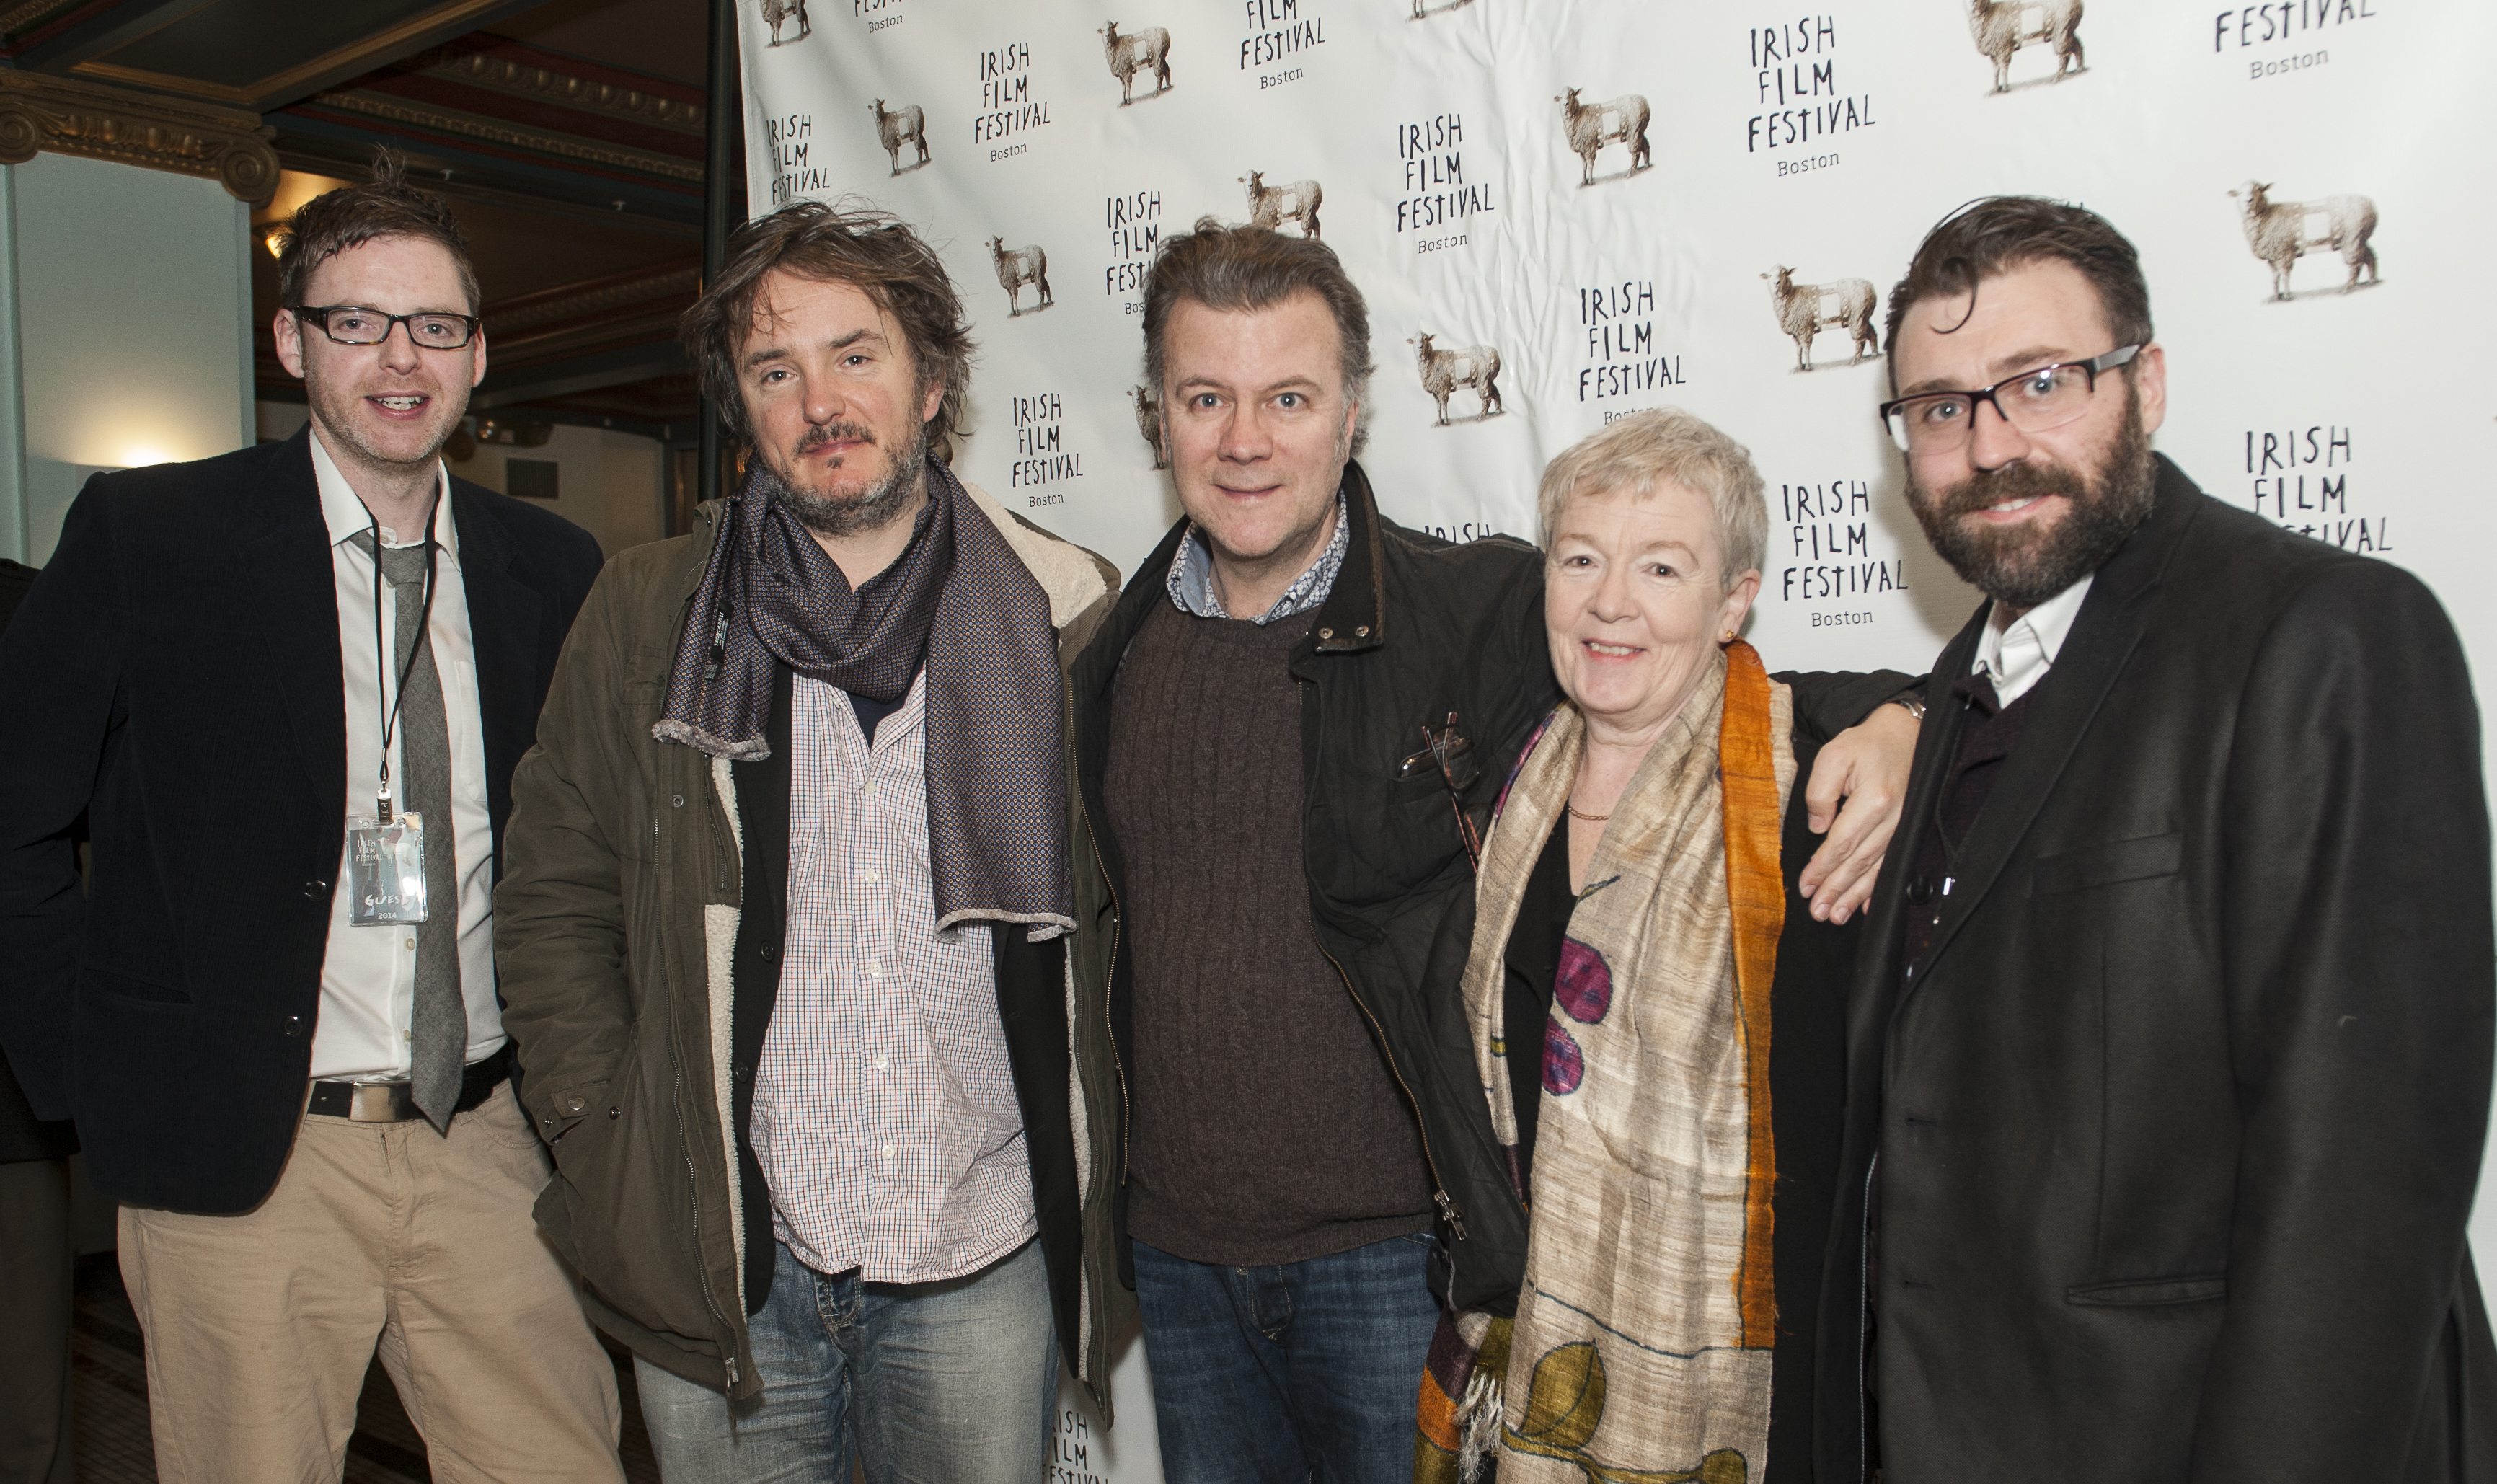 Irish Film Festival Boston 2015 Winner Best Short Film 'Volkswagen Joe' Brian Deane, Dylan Moran, Ian Fitzgibbon, Ruth Mccabe & Eamonn Cleary